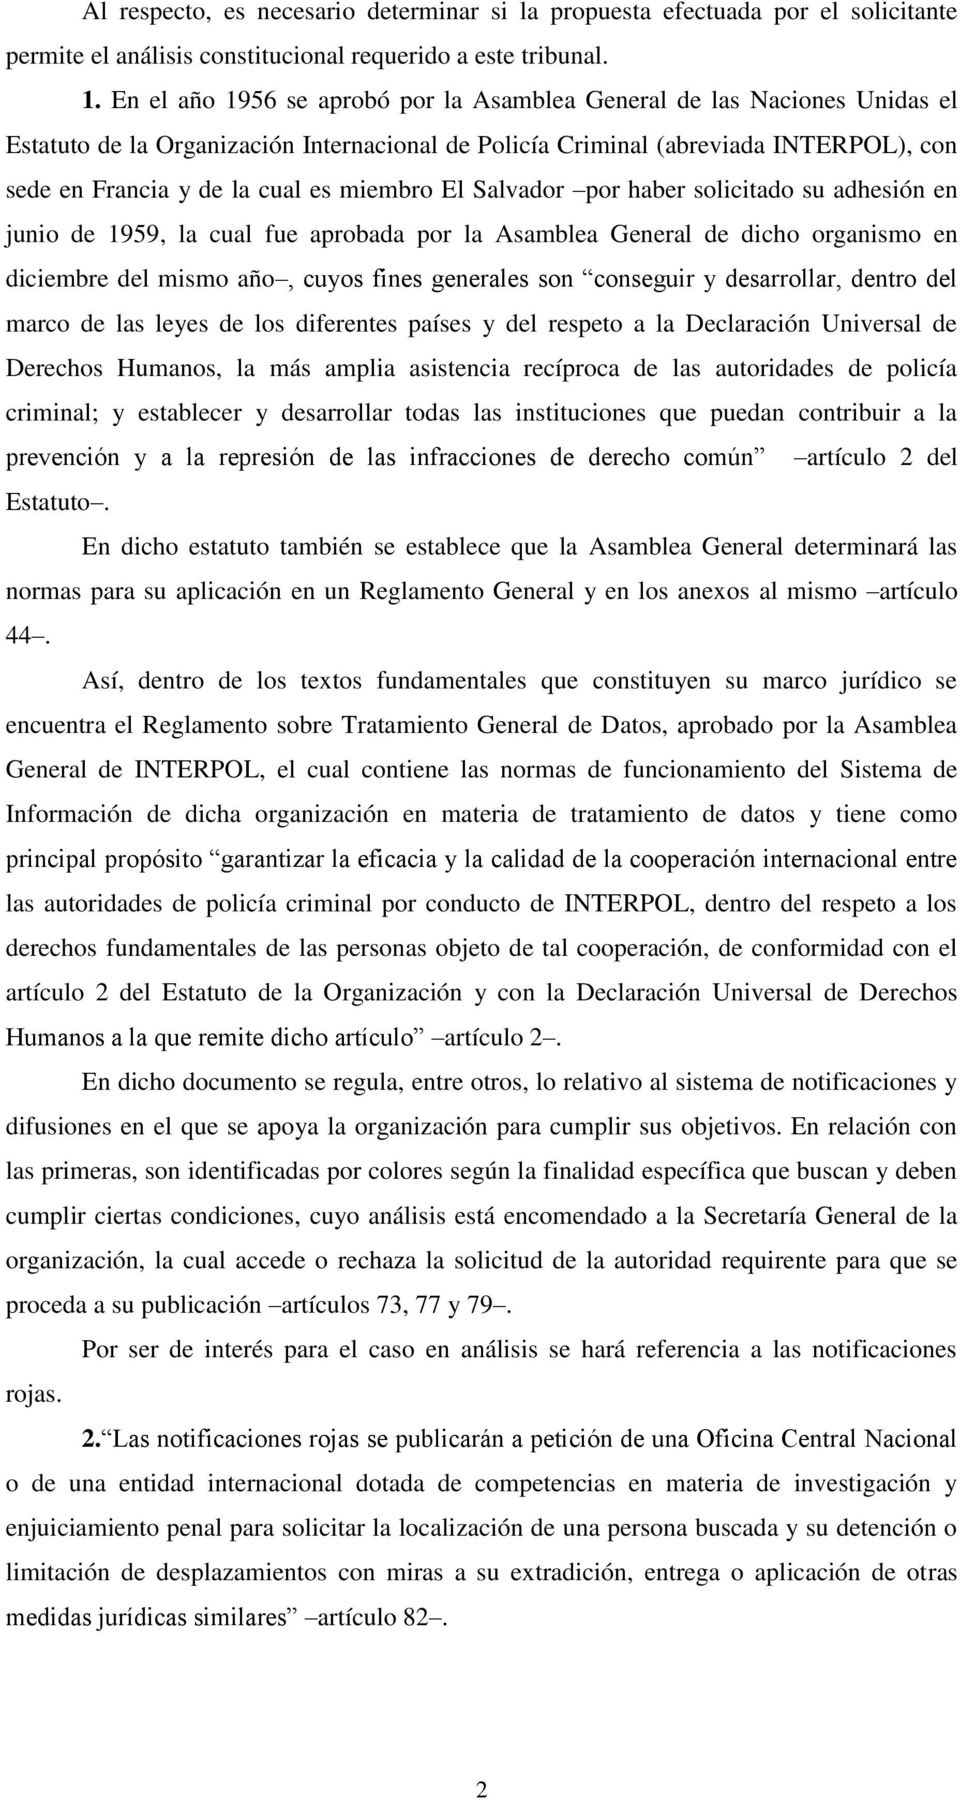 miembro El Salvador por haber solicitado su adhesión en junio de 1959, la cual fue aprobada por la Asamblea General de dicho organismo en diciembre del mismo año, cuyos fines generales son conseguir